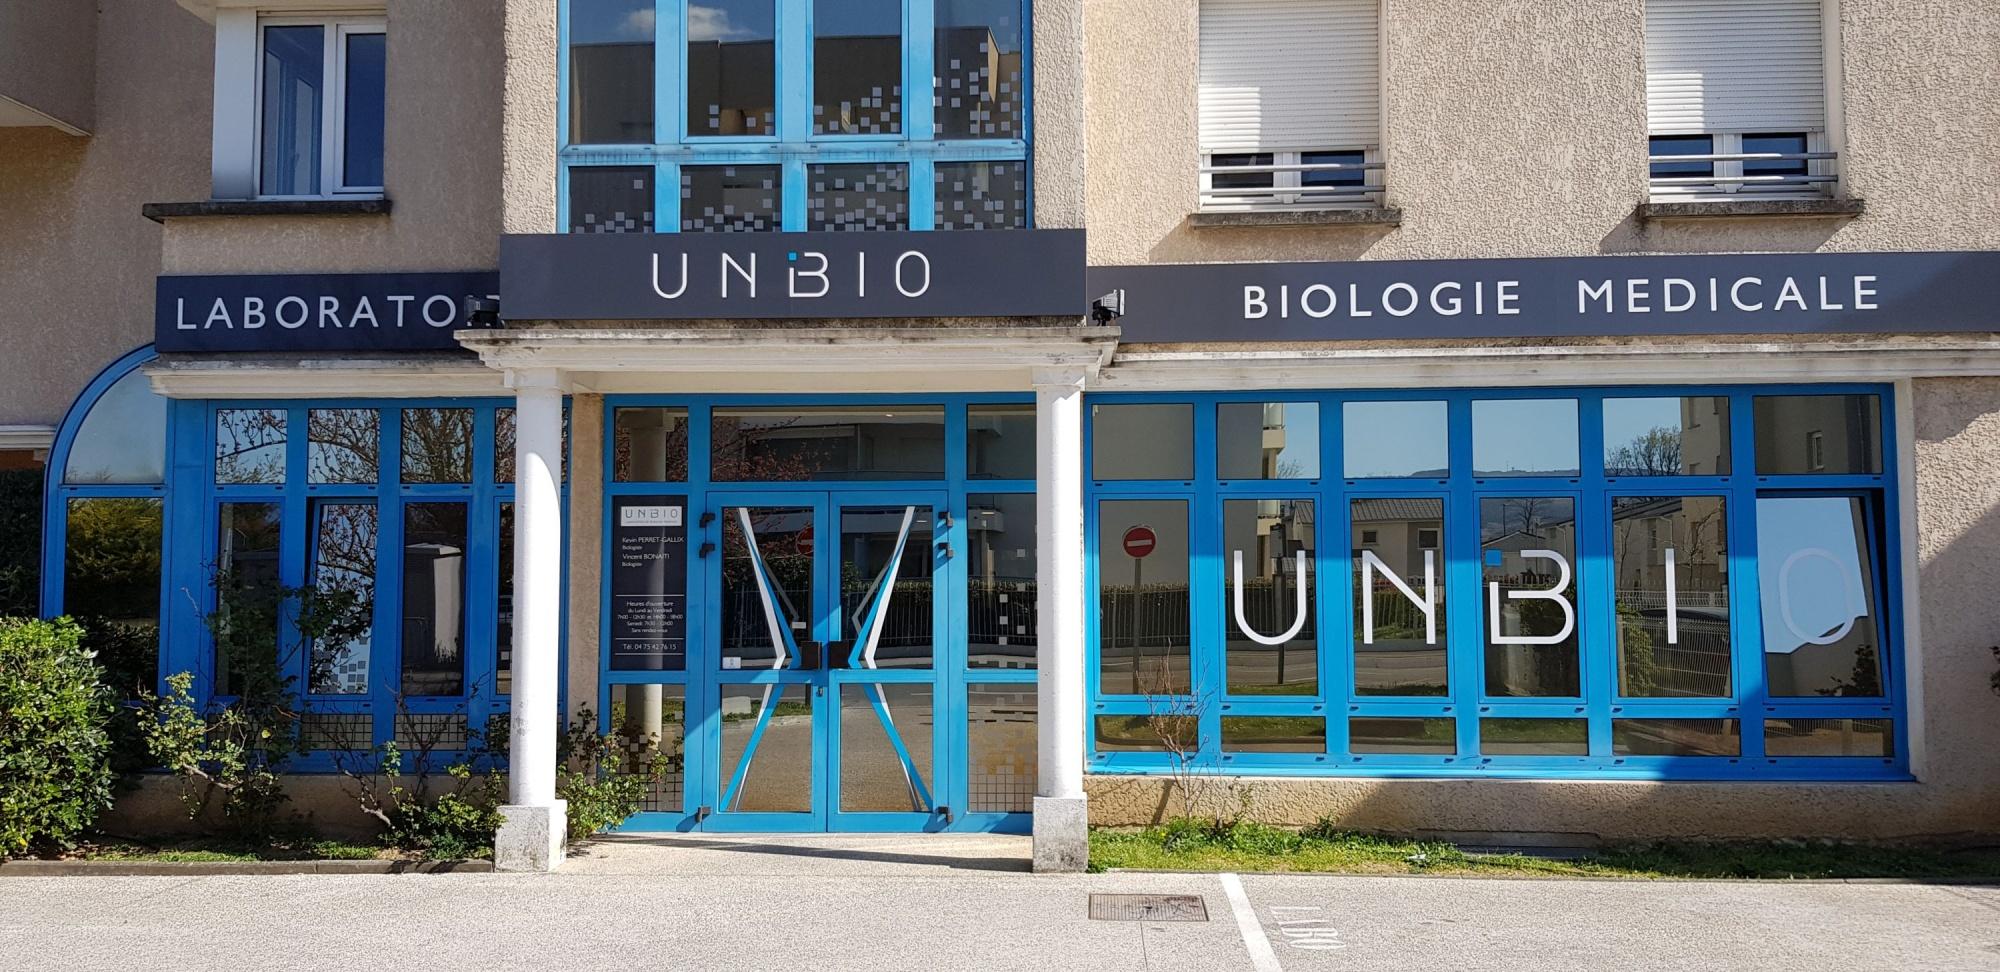 Laboratoire Unibio Bourg-lès-valence Bourg Lès Valence